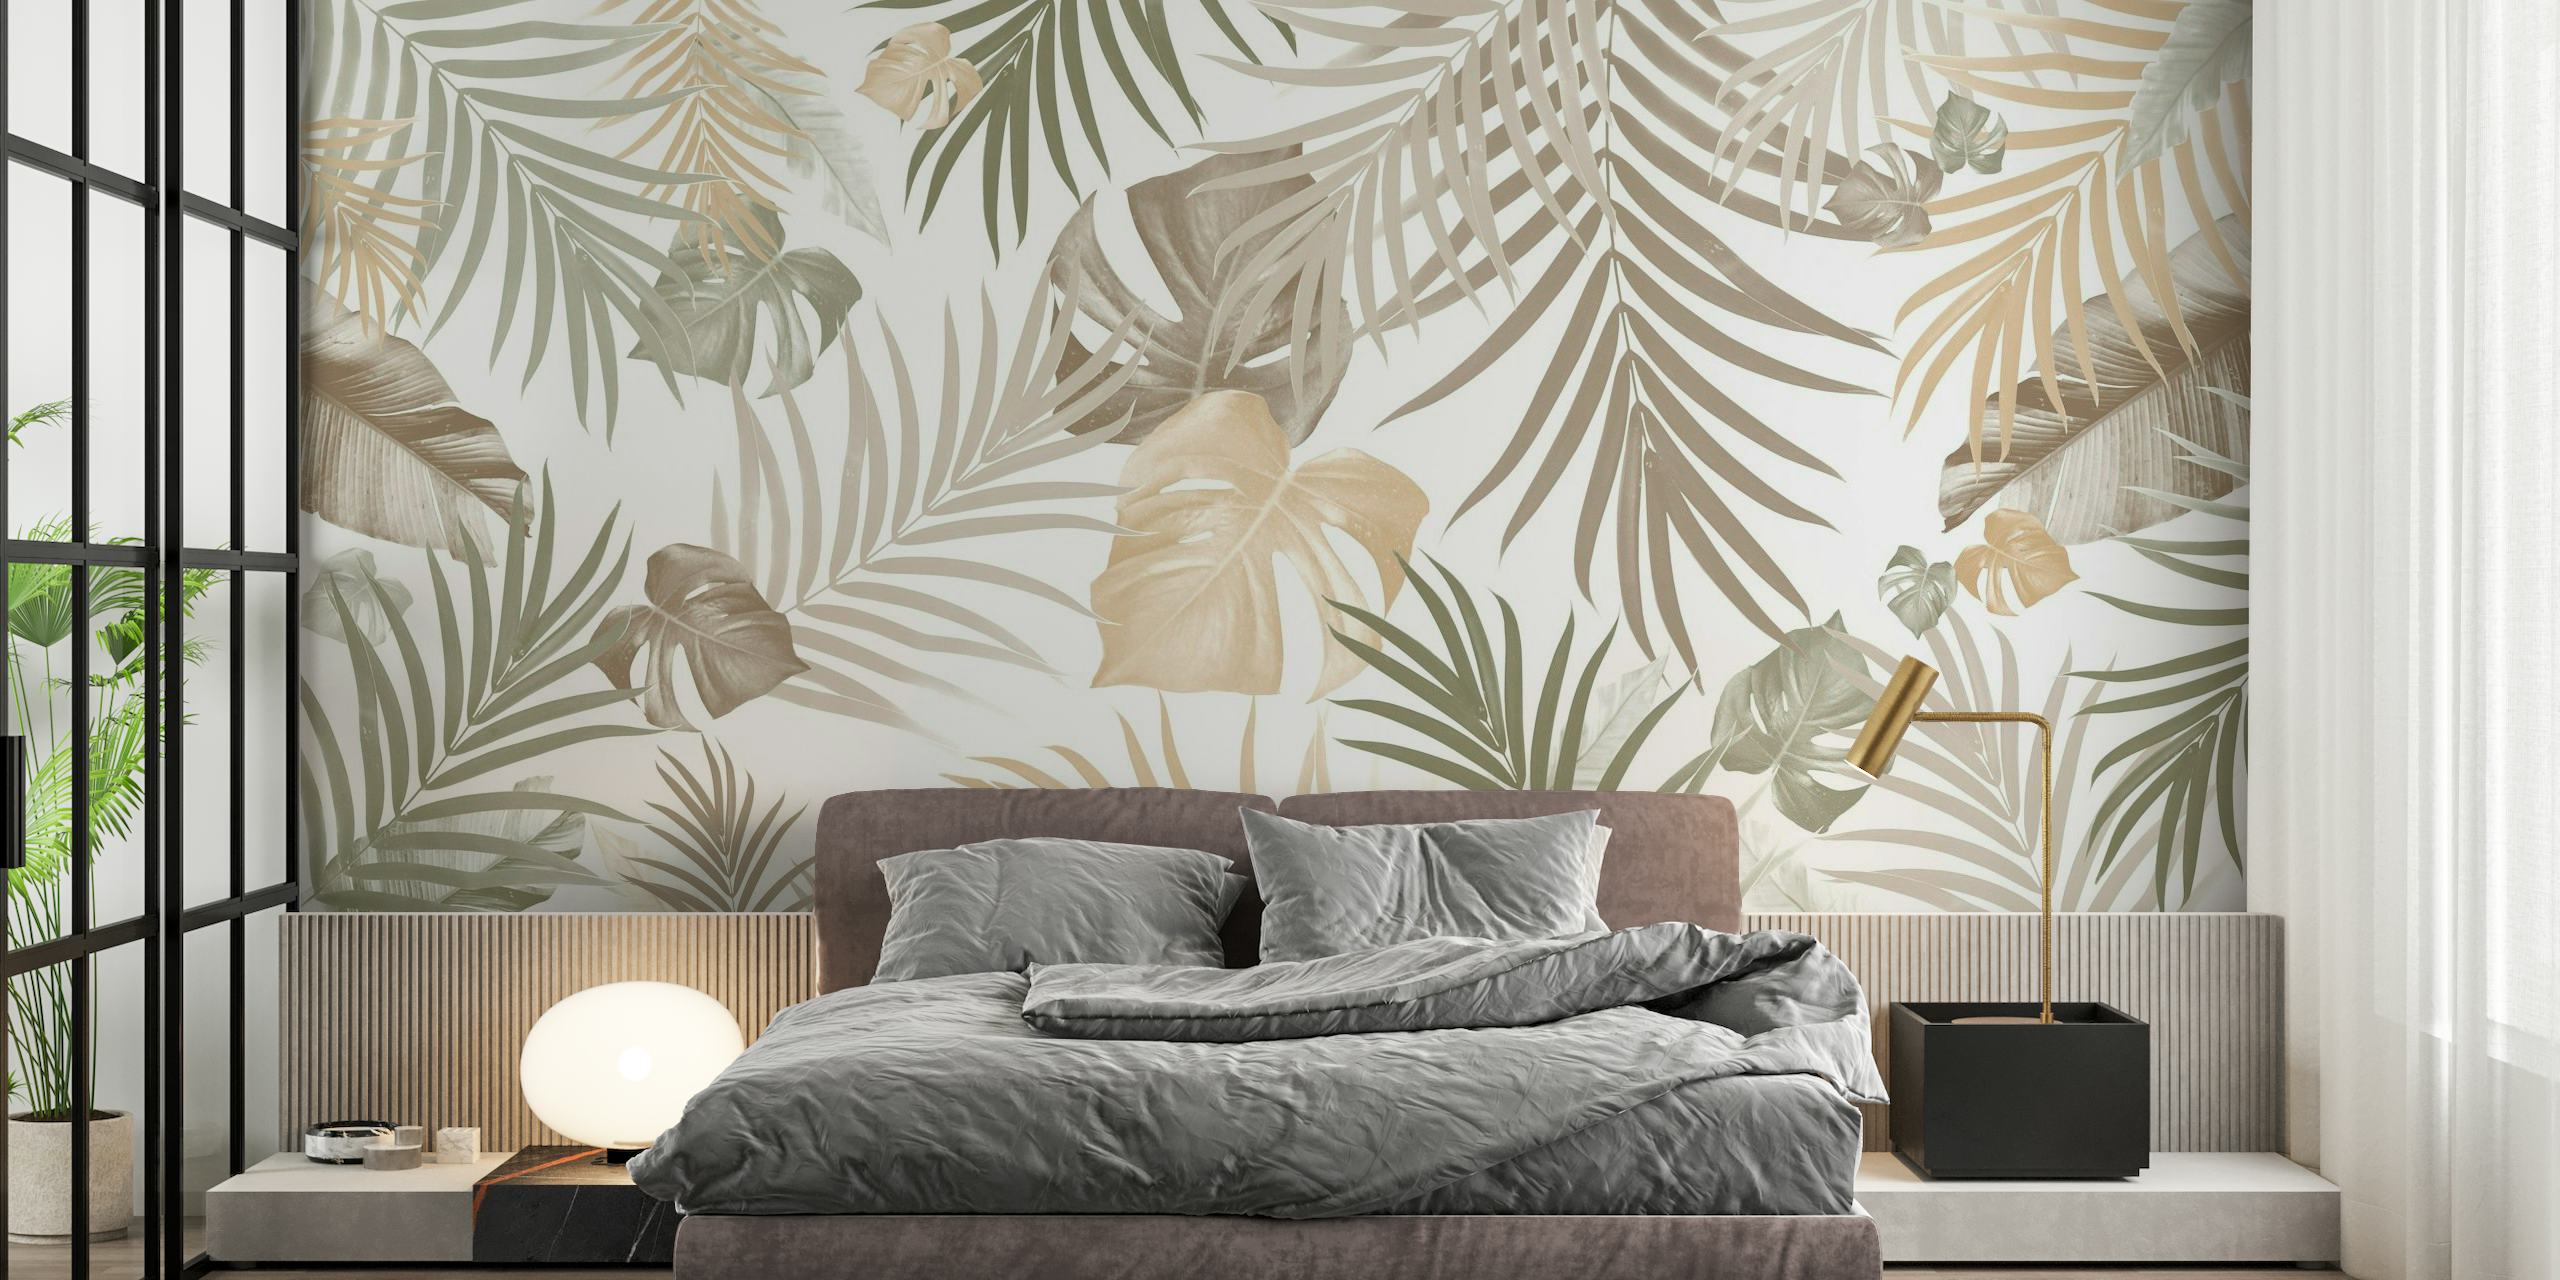 Selva tropical elegante deixa mural de parede em uma paleta de cores neutras